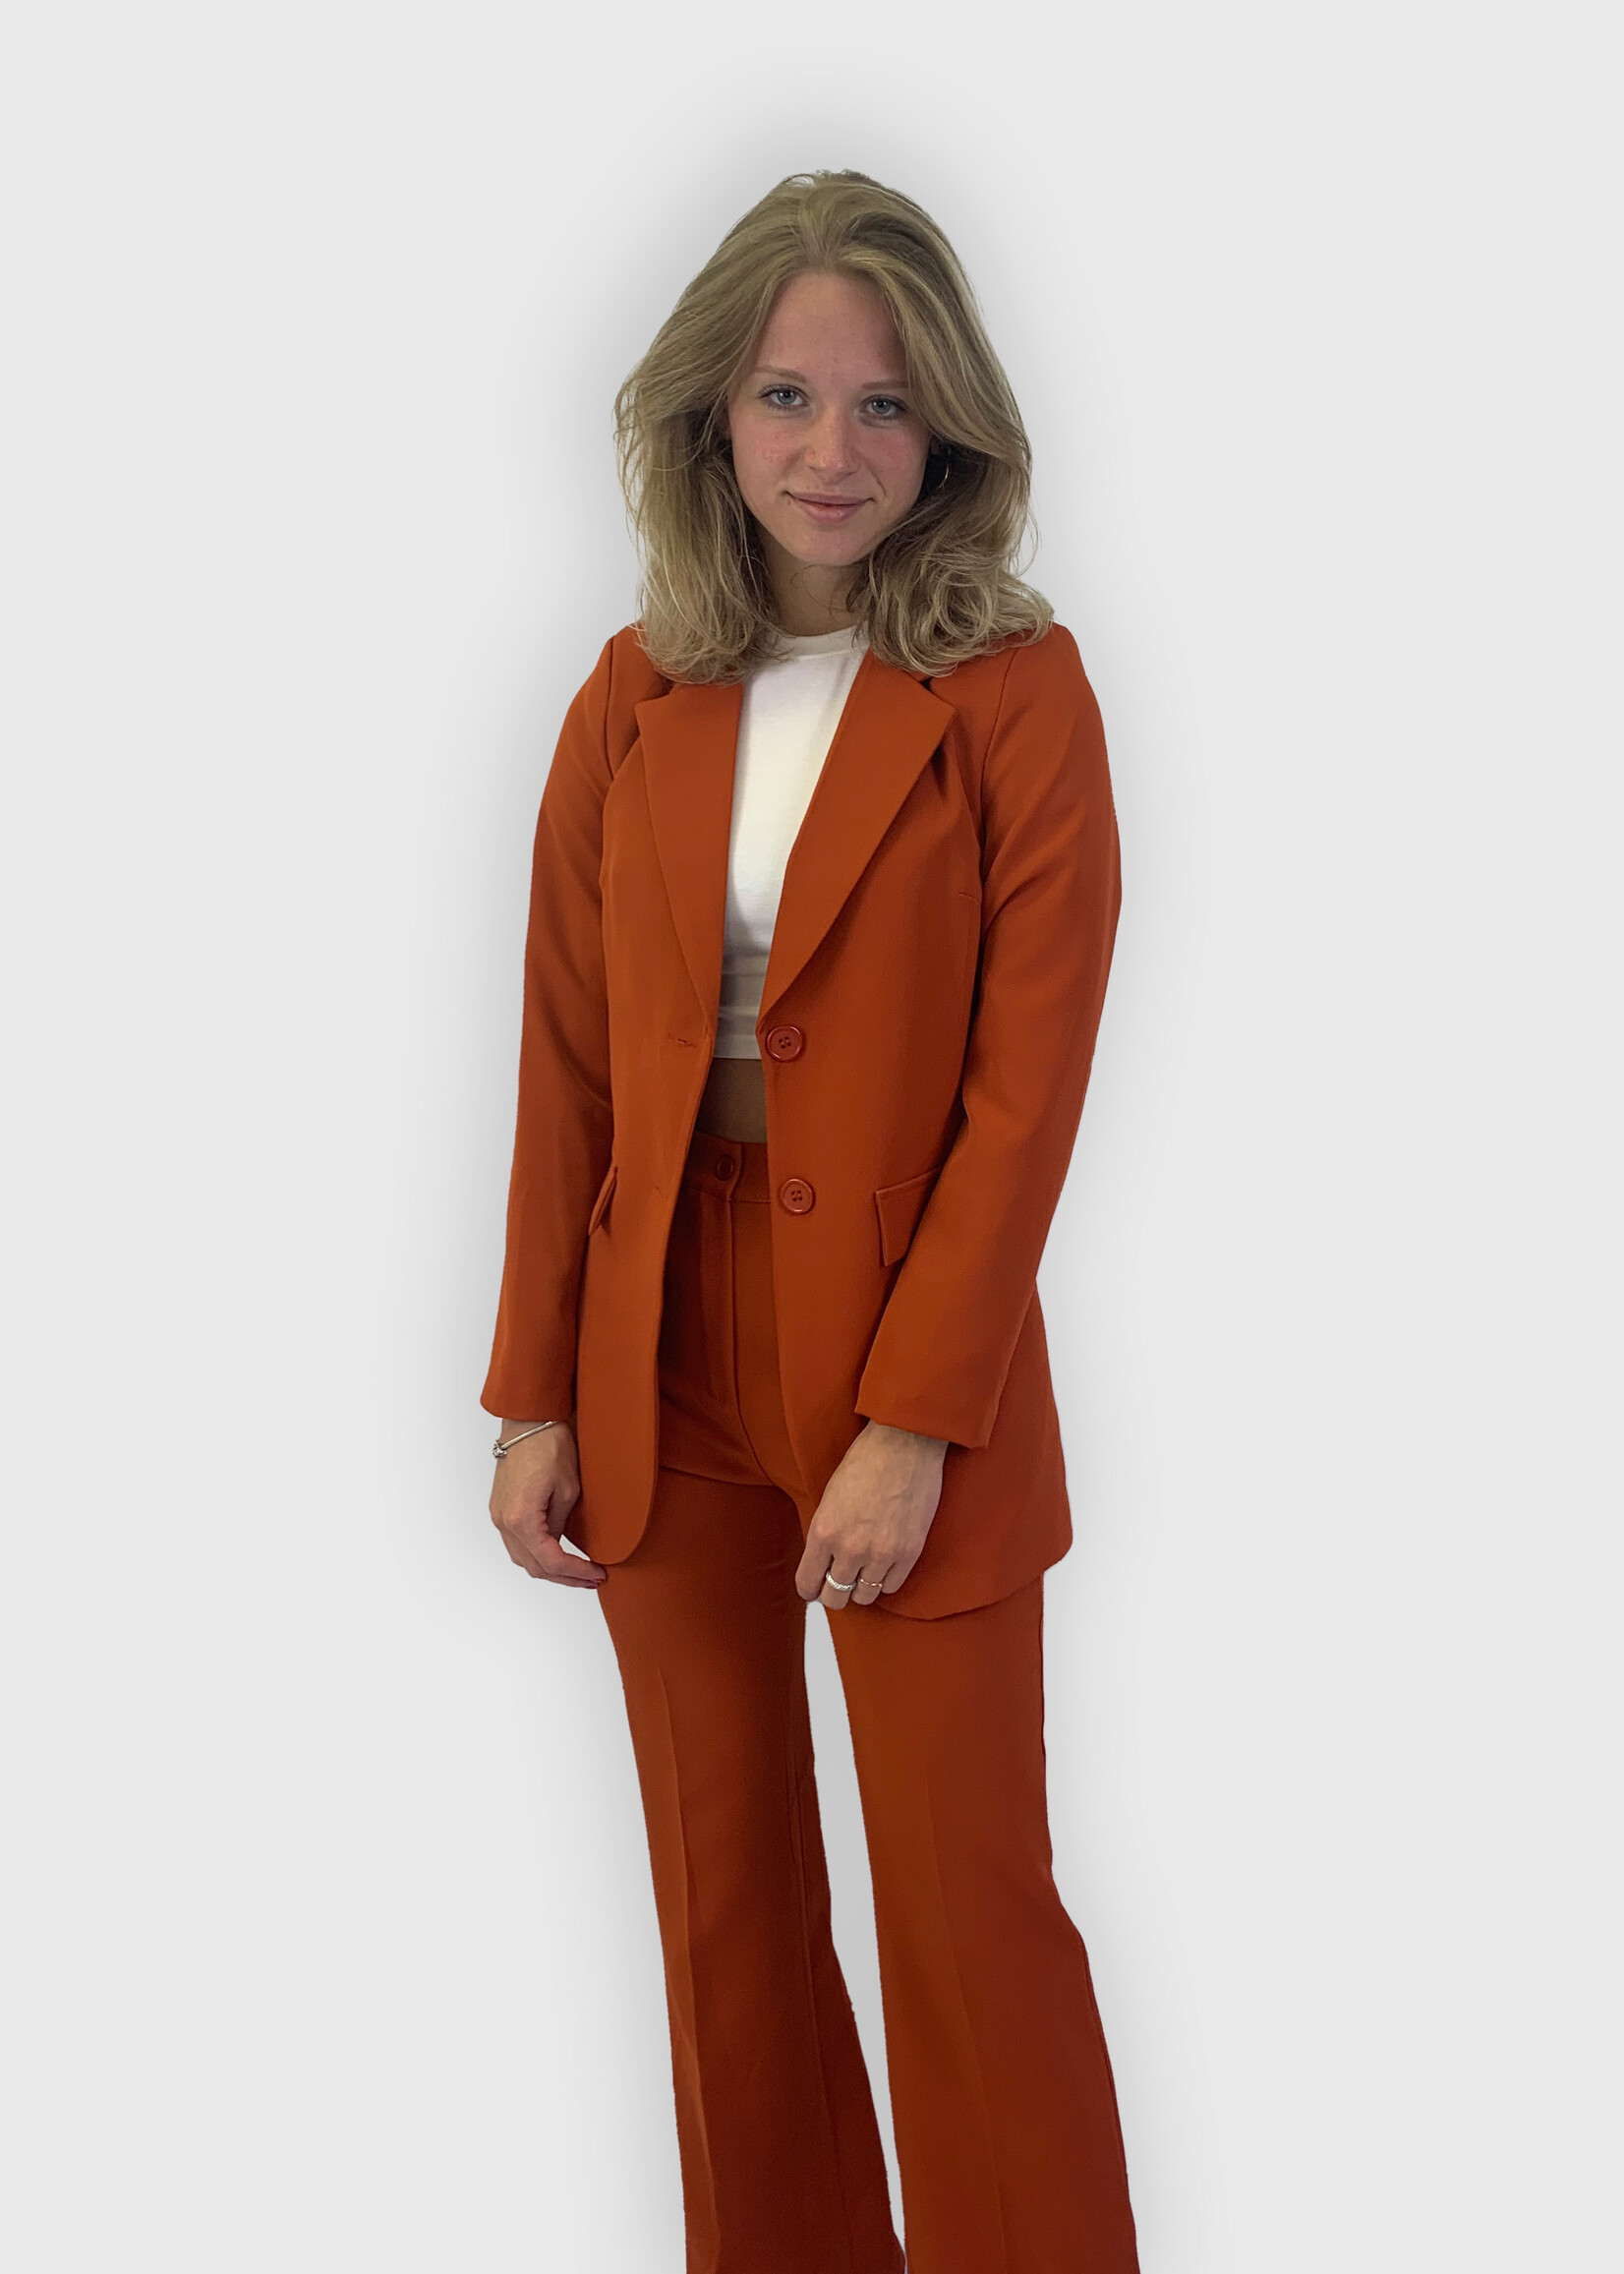 Kate Pantalon Oranje